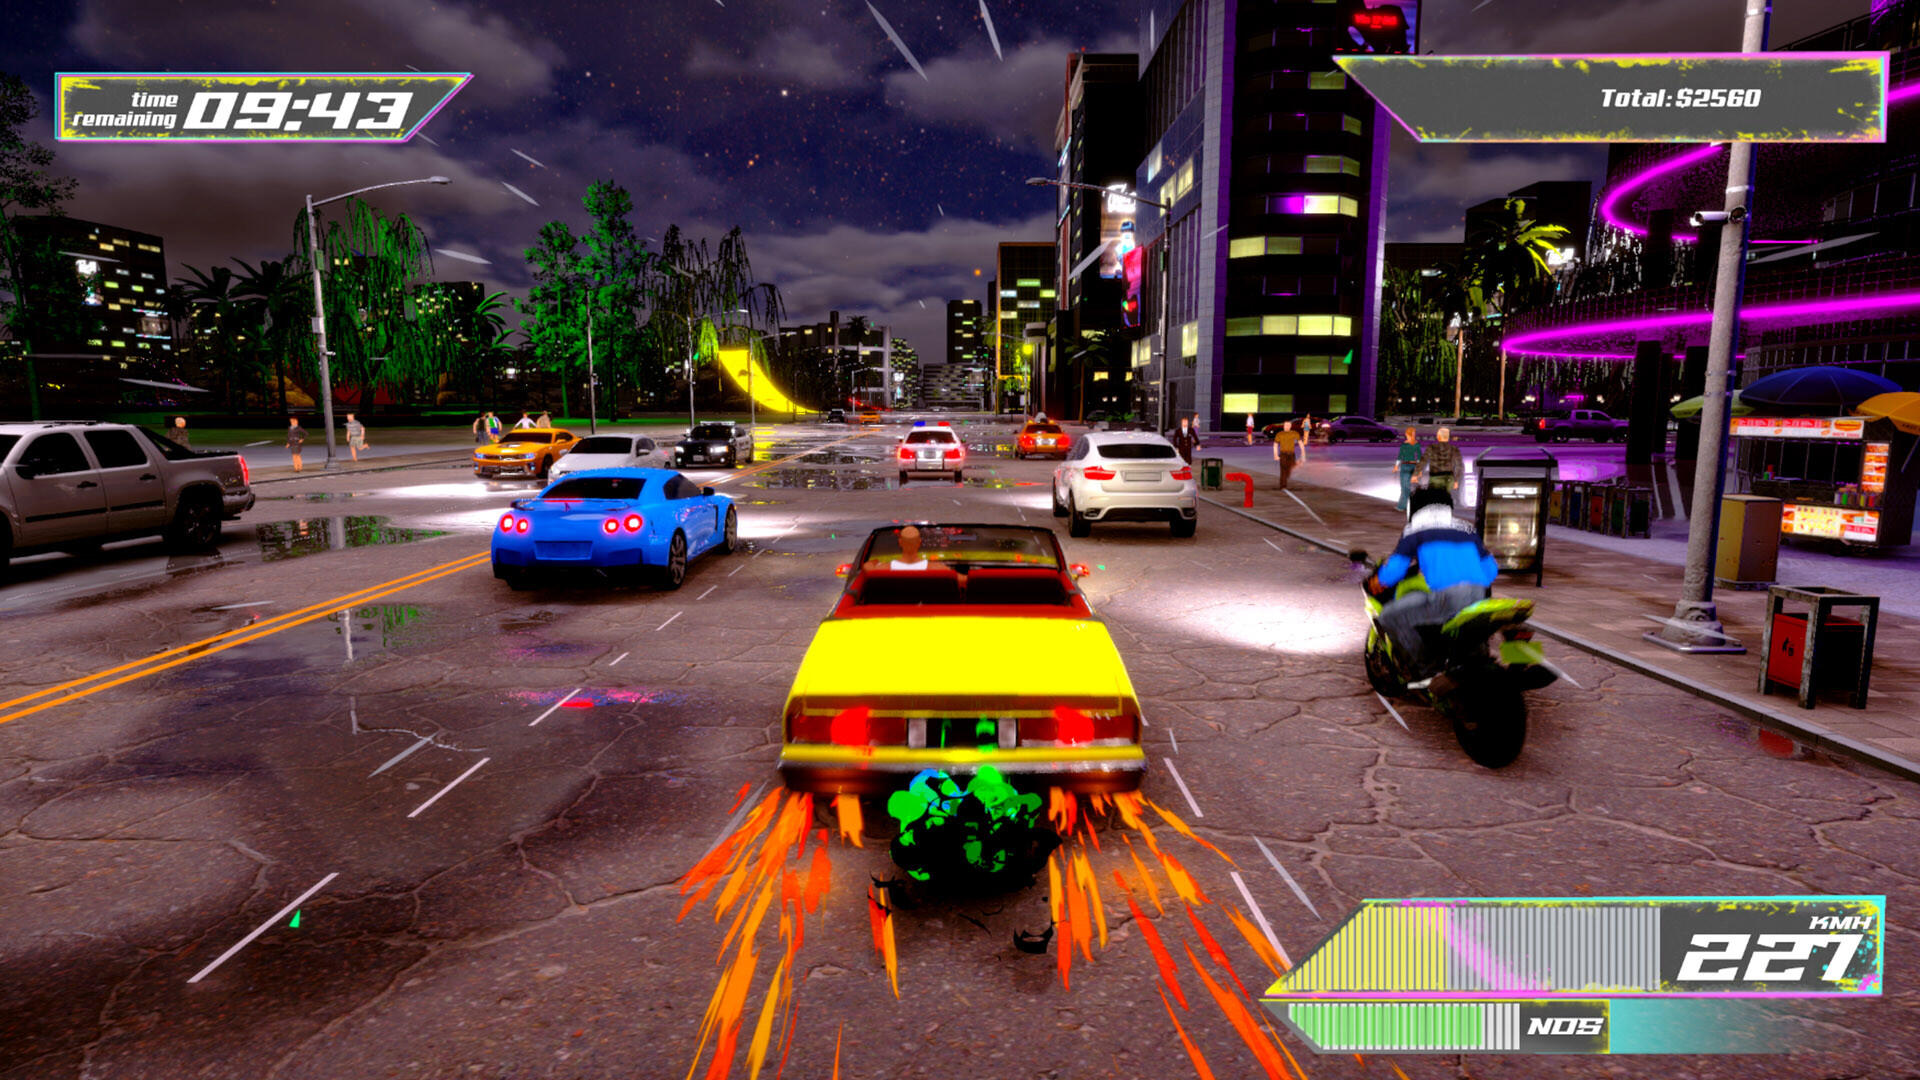 Screenshot 1 of 城市計程車模擬器 